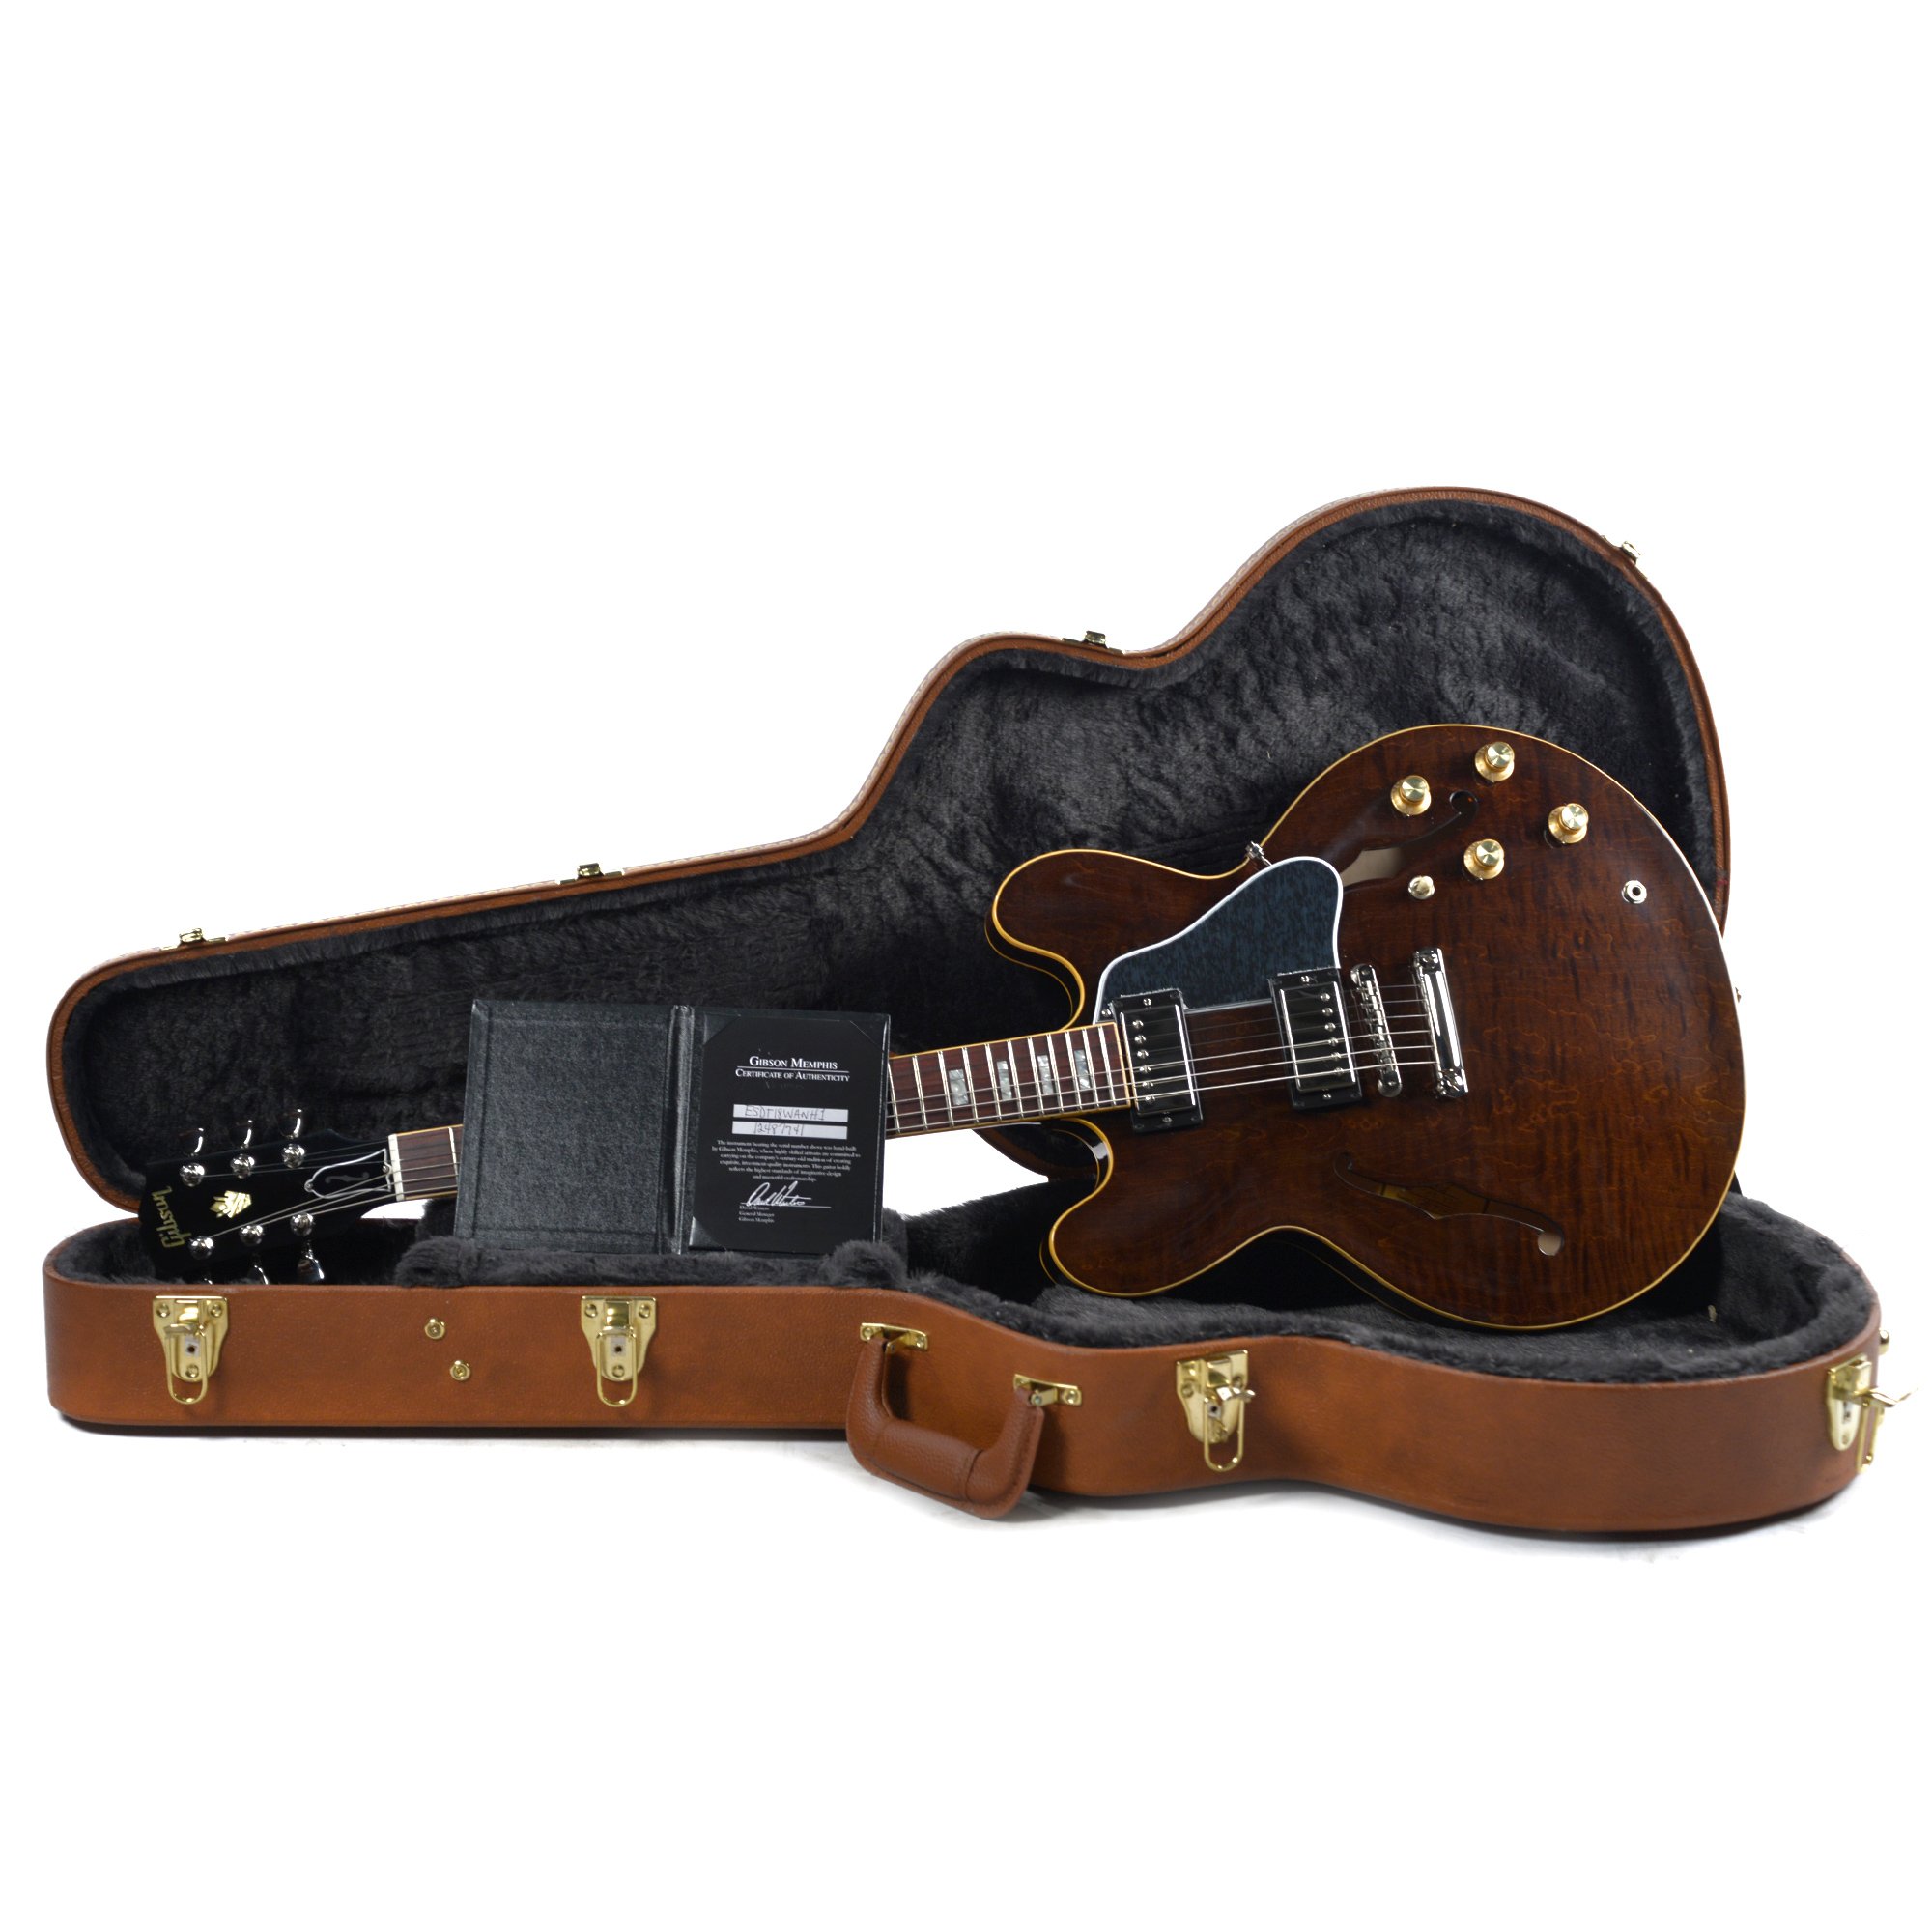 Gibson Es-335 Figured 2018 Ltd - Antique Walnut - Semi hollow elektriche gitaar - Variation 5